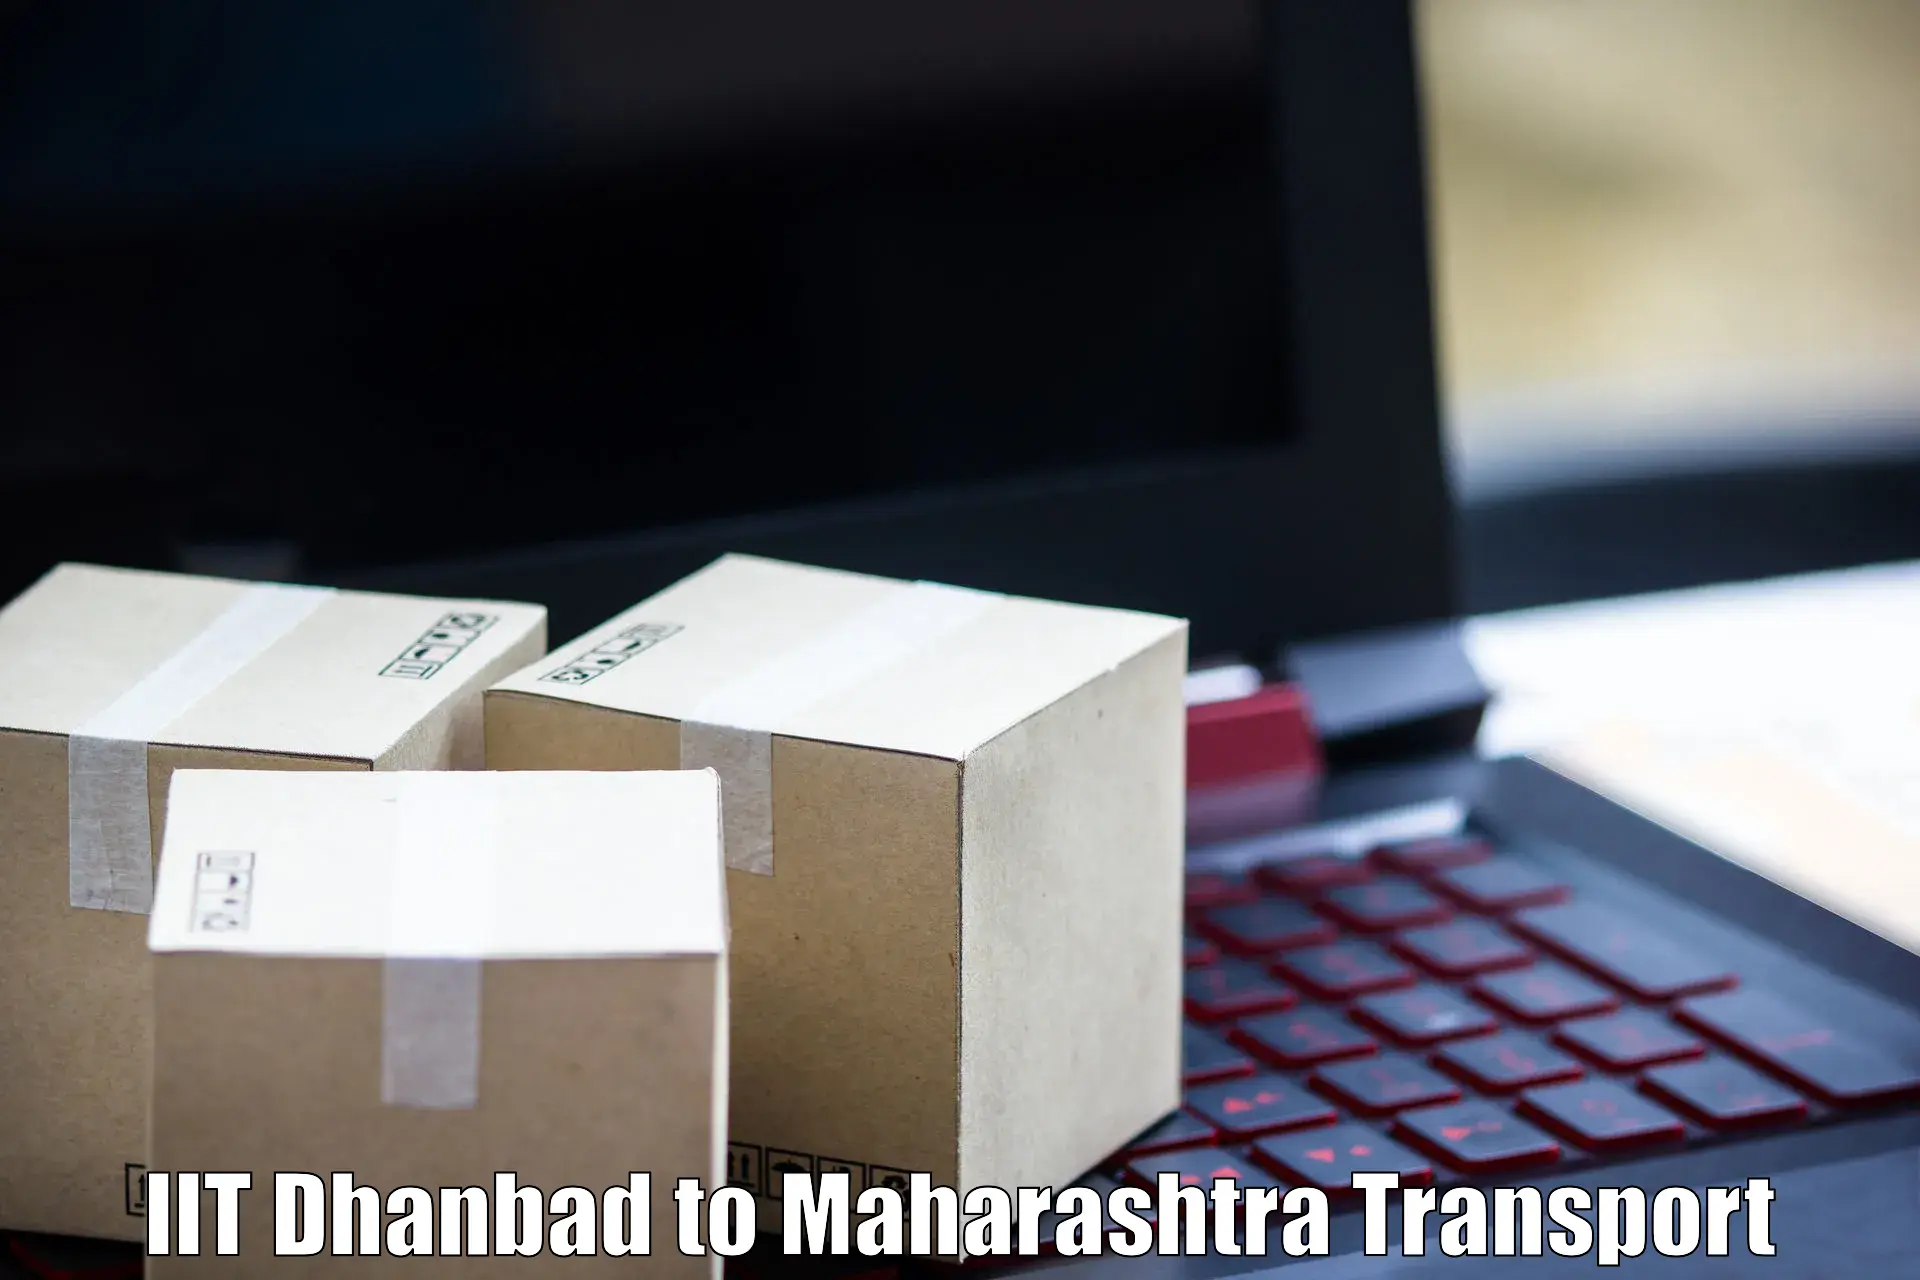 Furniture transport service IIT Dhanbad to Mumbai University